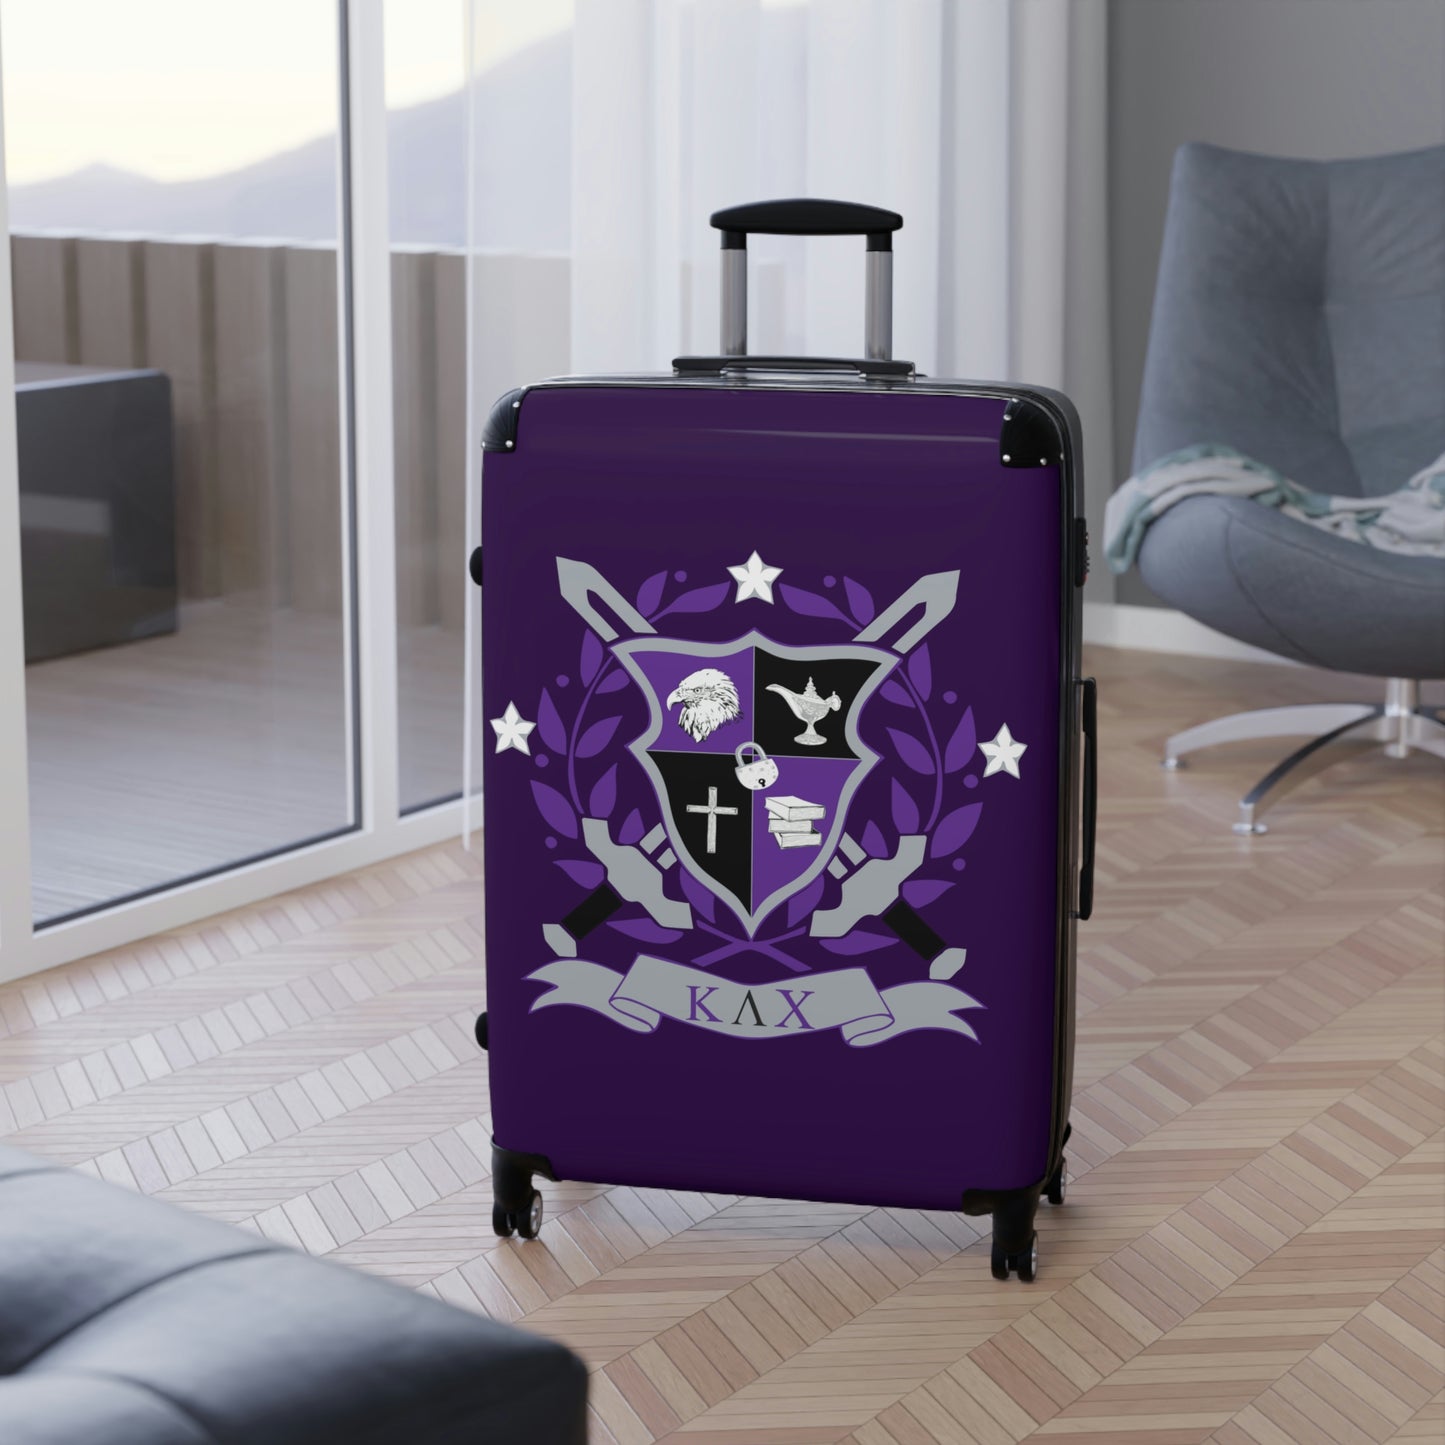 Cabin Suitcase - KLC Crest Purple